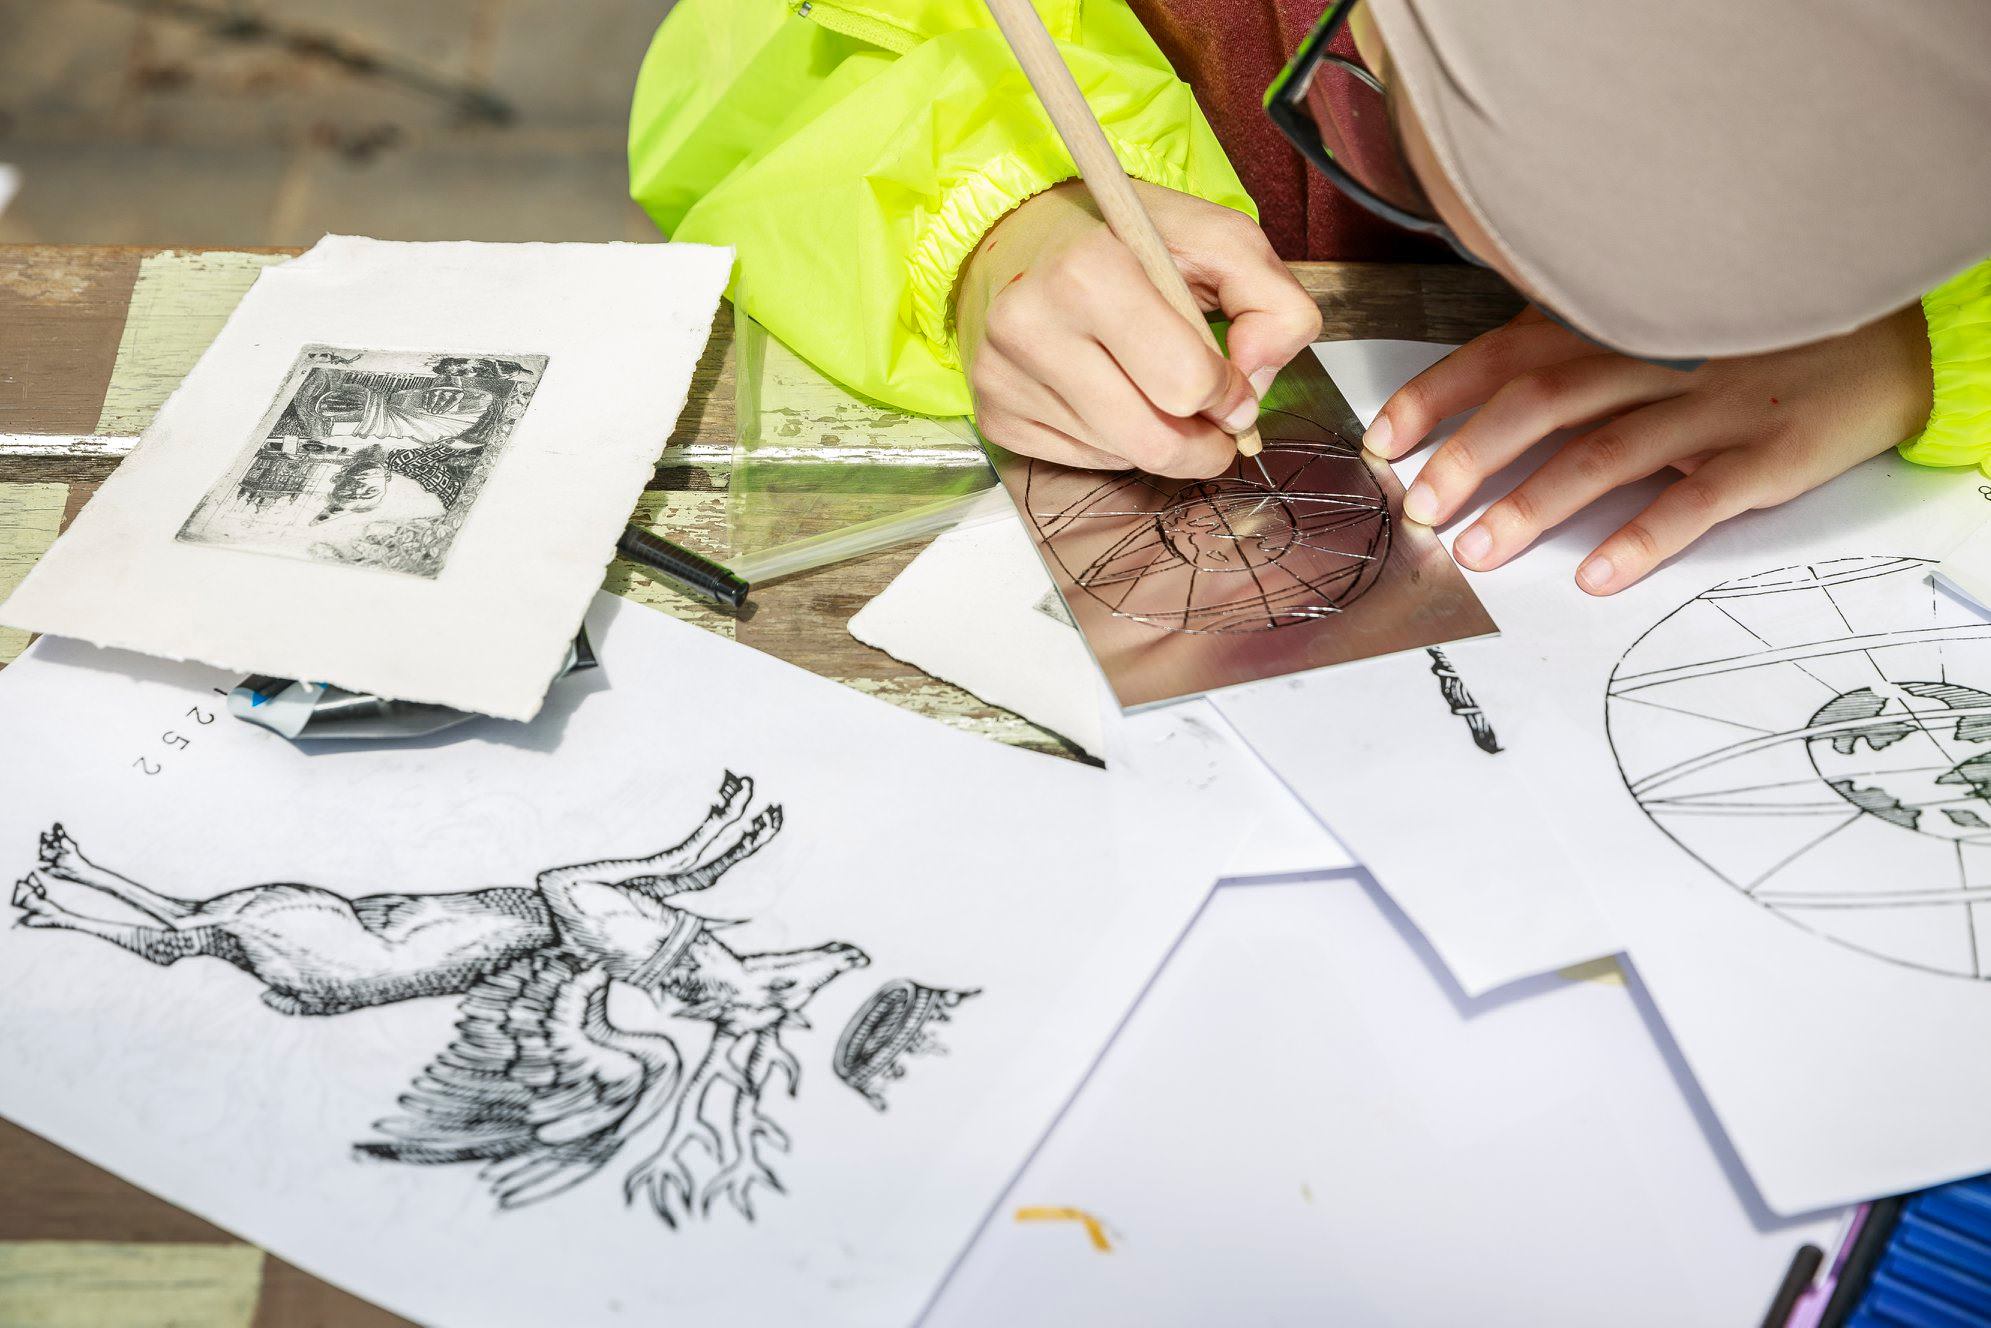 Workshop: Master etching drypoint – schools